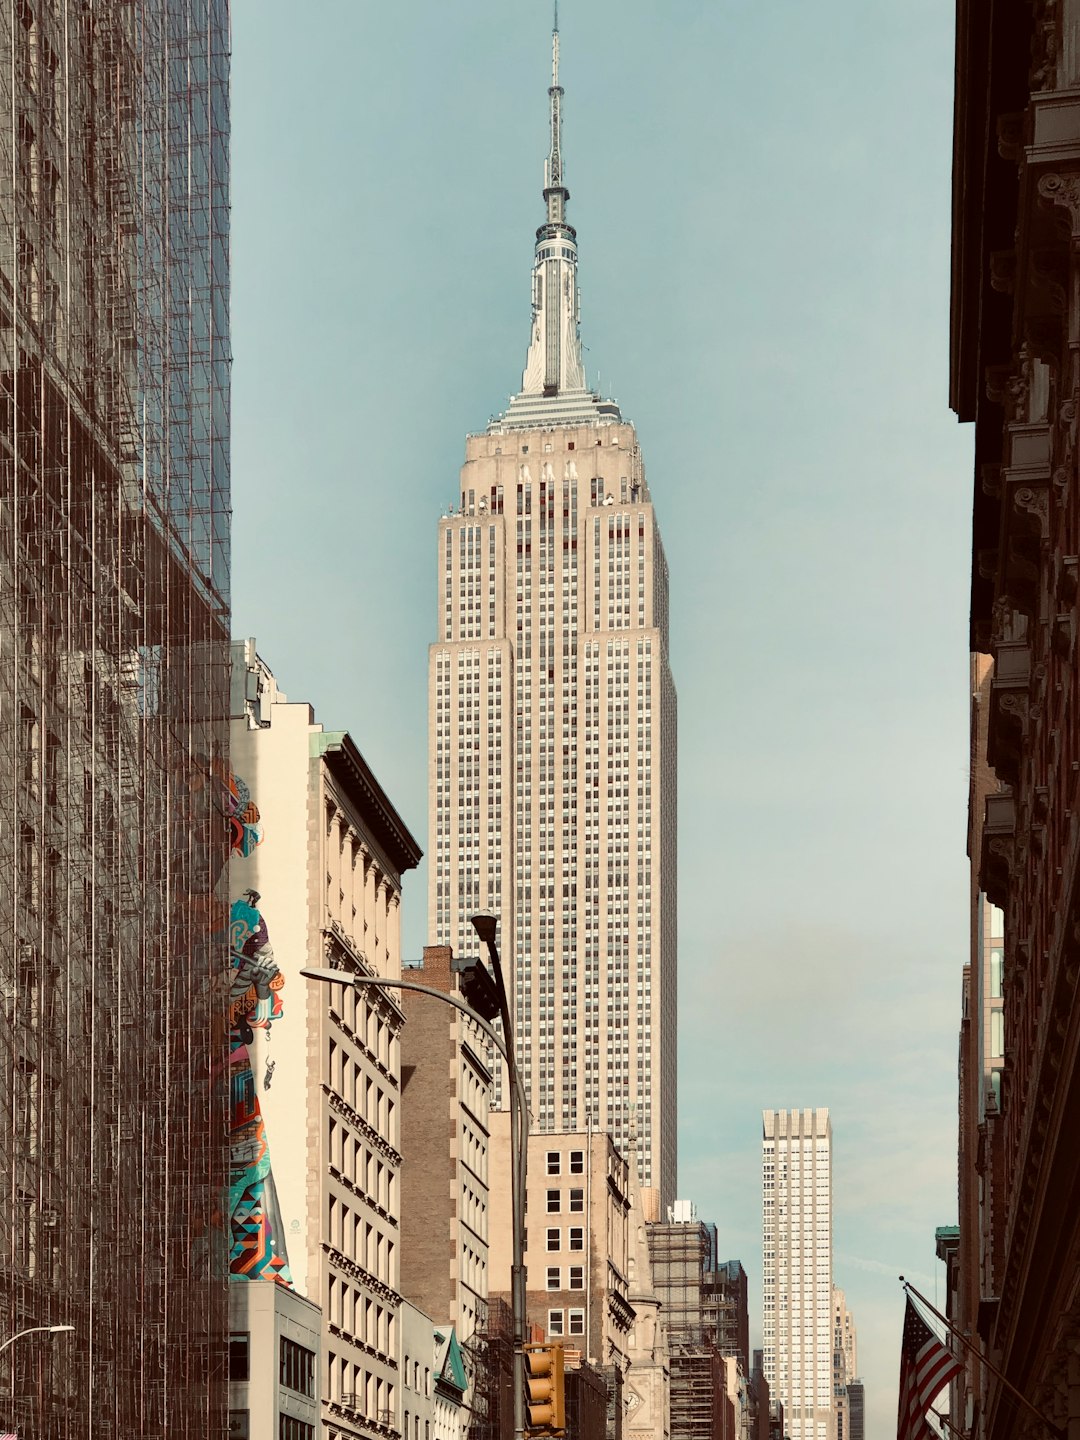 Landmark photo spot 225 Fifth Ave Chrysler Building